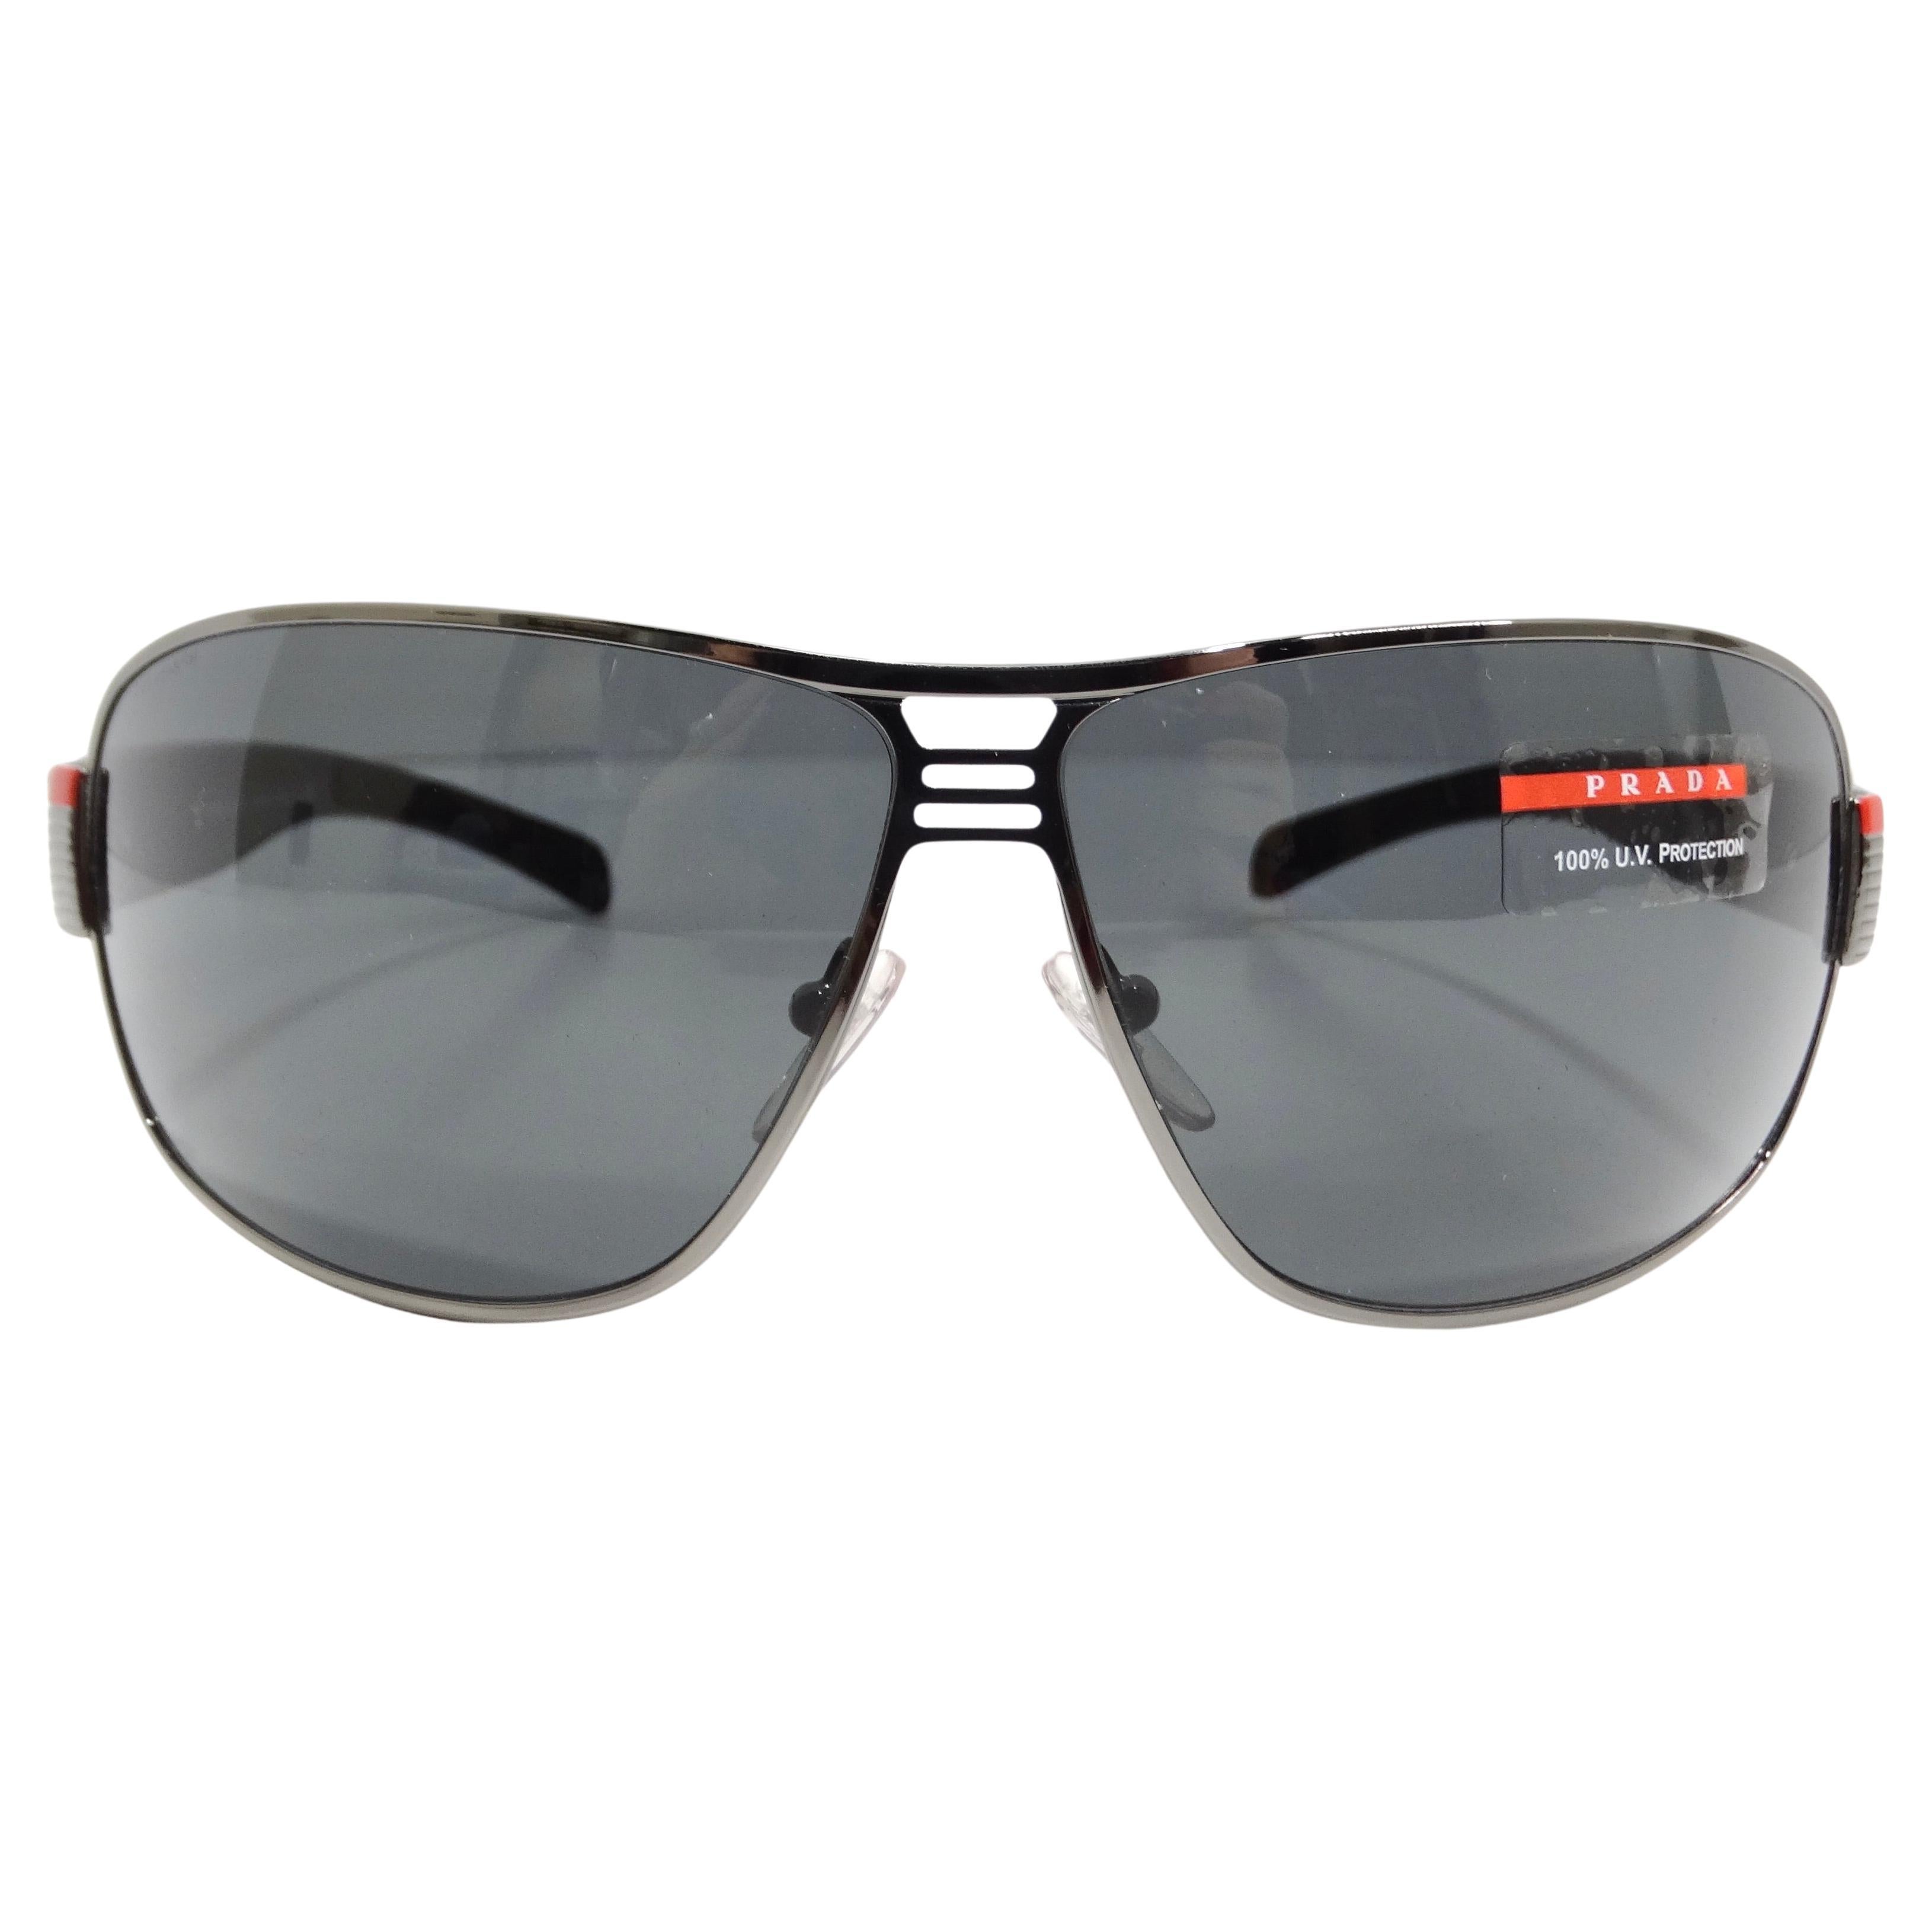 Gafas de sol de aviador Prada en tono plateado de los años 90